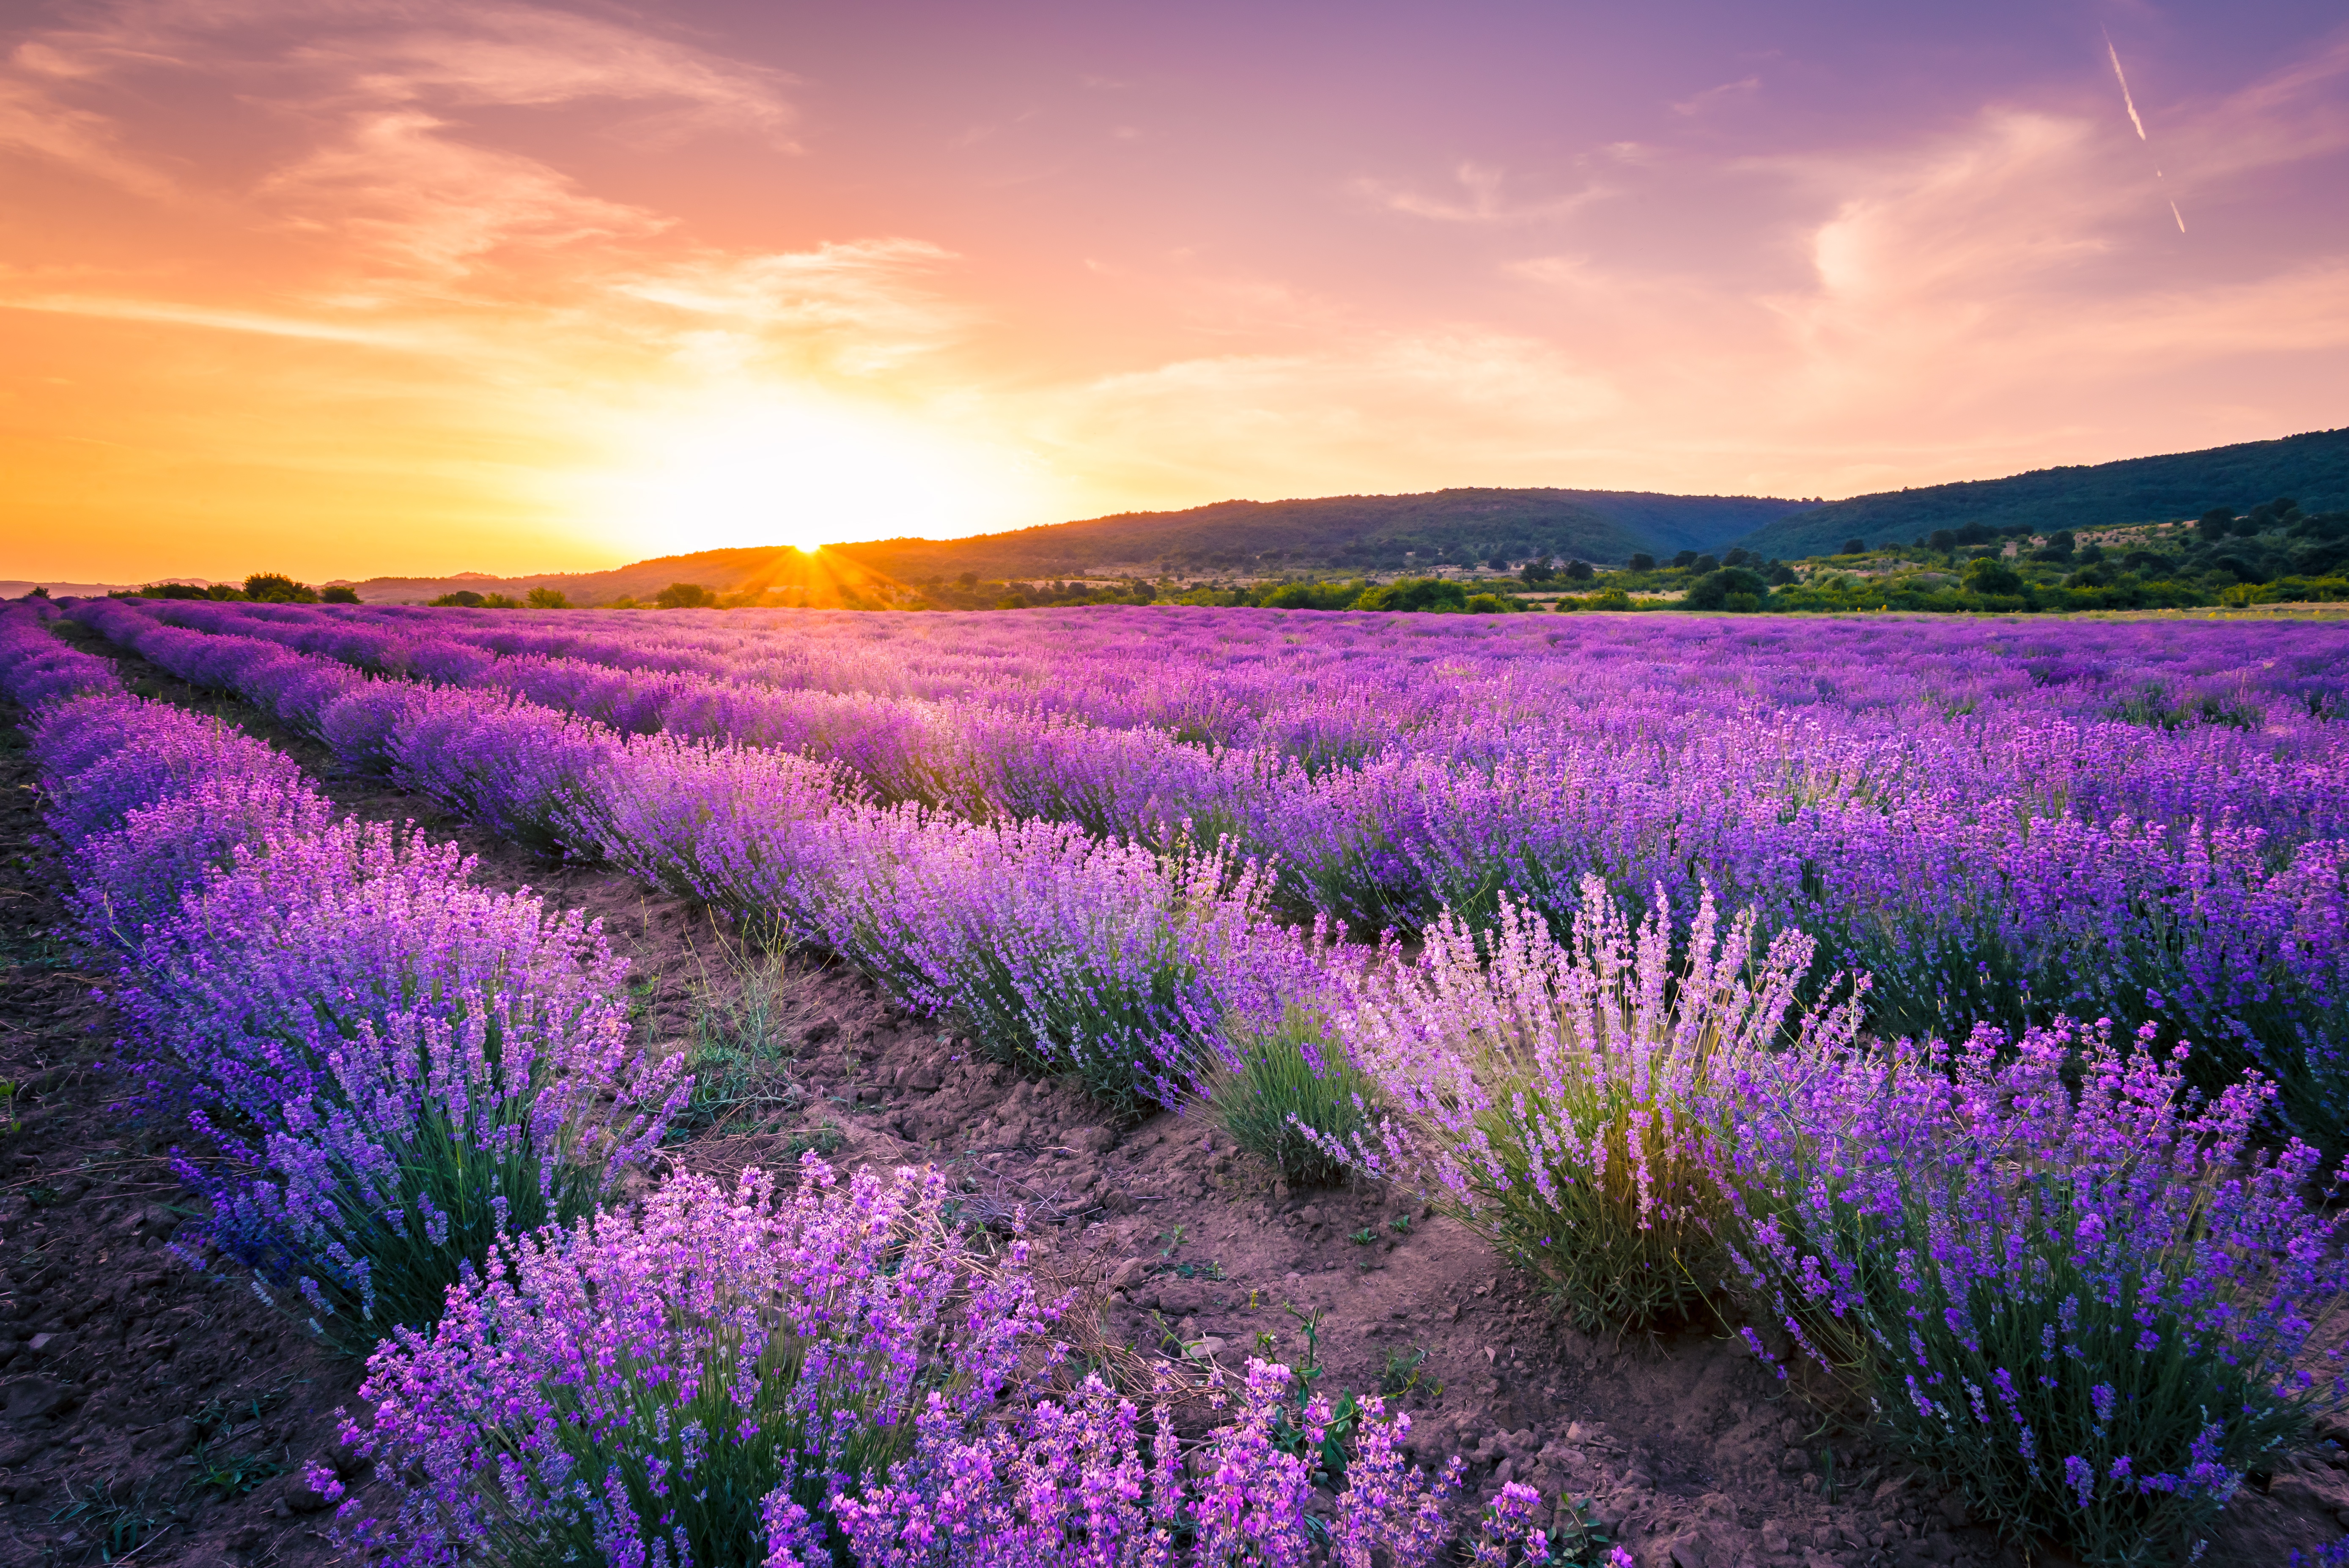 Lavender (Oải hương): Oải hương là một loài hoa đẹp và thơ mộng với hương thơm dịu ngọt đặc trưng. Bức ảnh sẽ cho bạn một cái nhìn gần gũi nhất về loài hoa này, từ cánh hoa nhỏ xinh cho đến mùi hương ngọt ngào. Nếu bạn là người yêu hoa, không thể bỏ qua bức ảnh về oải hương này.